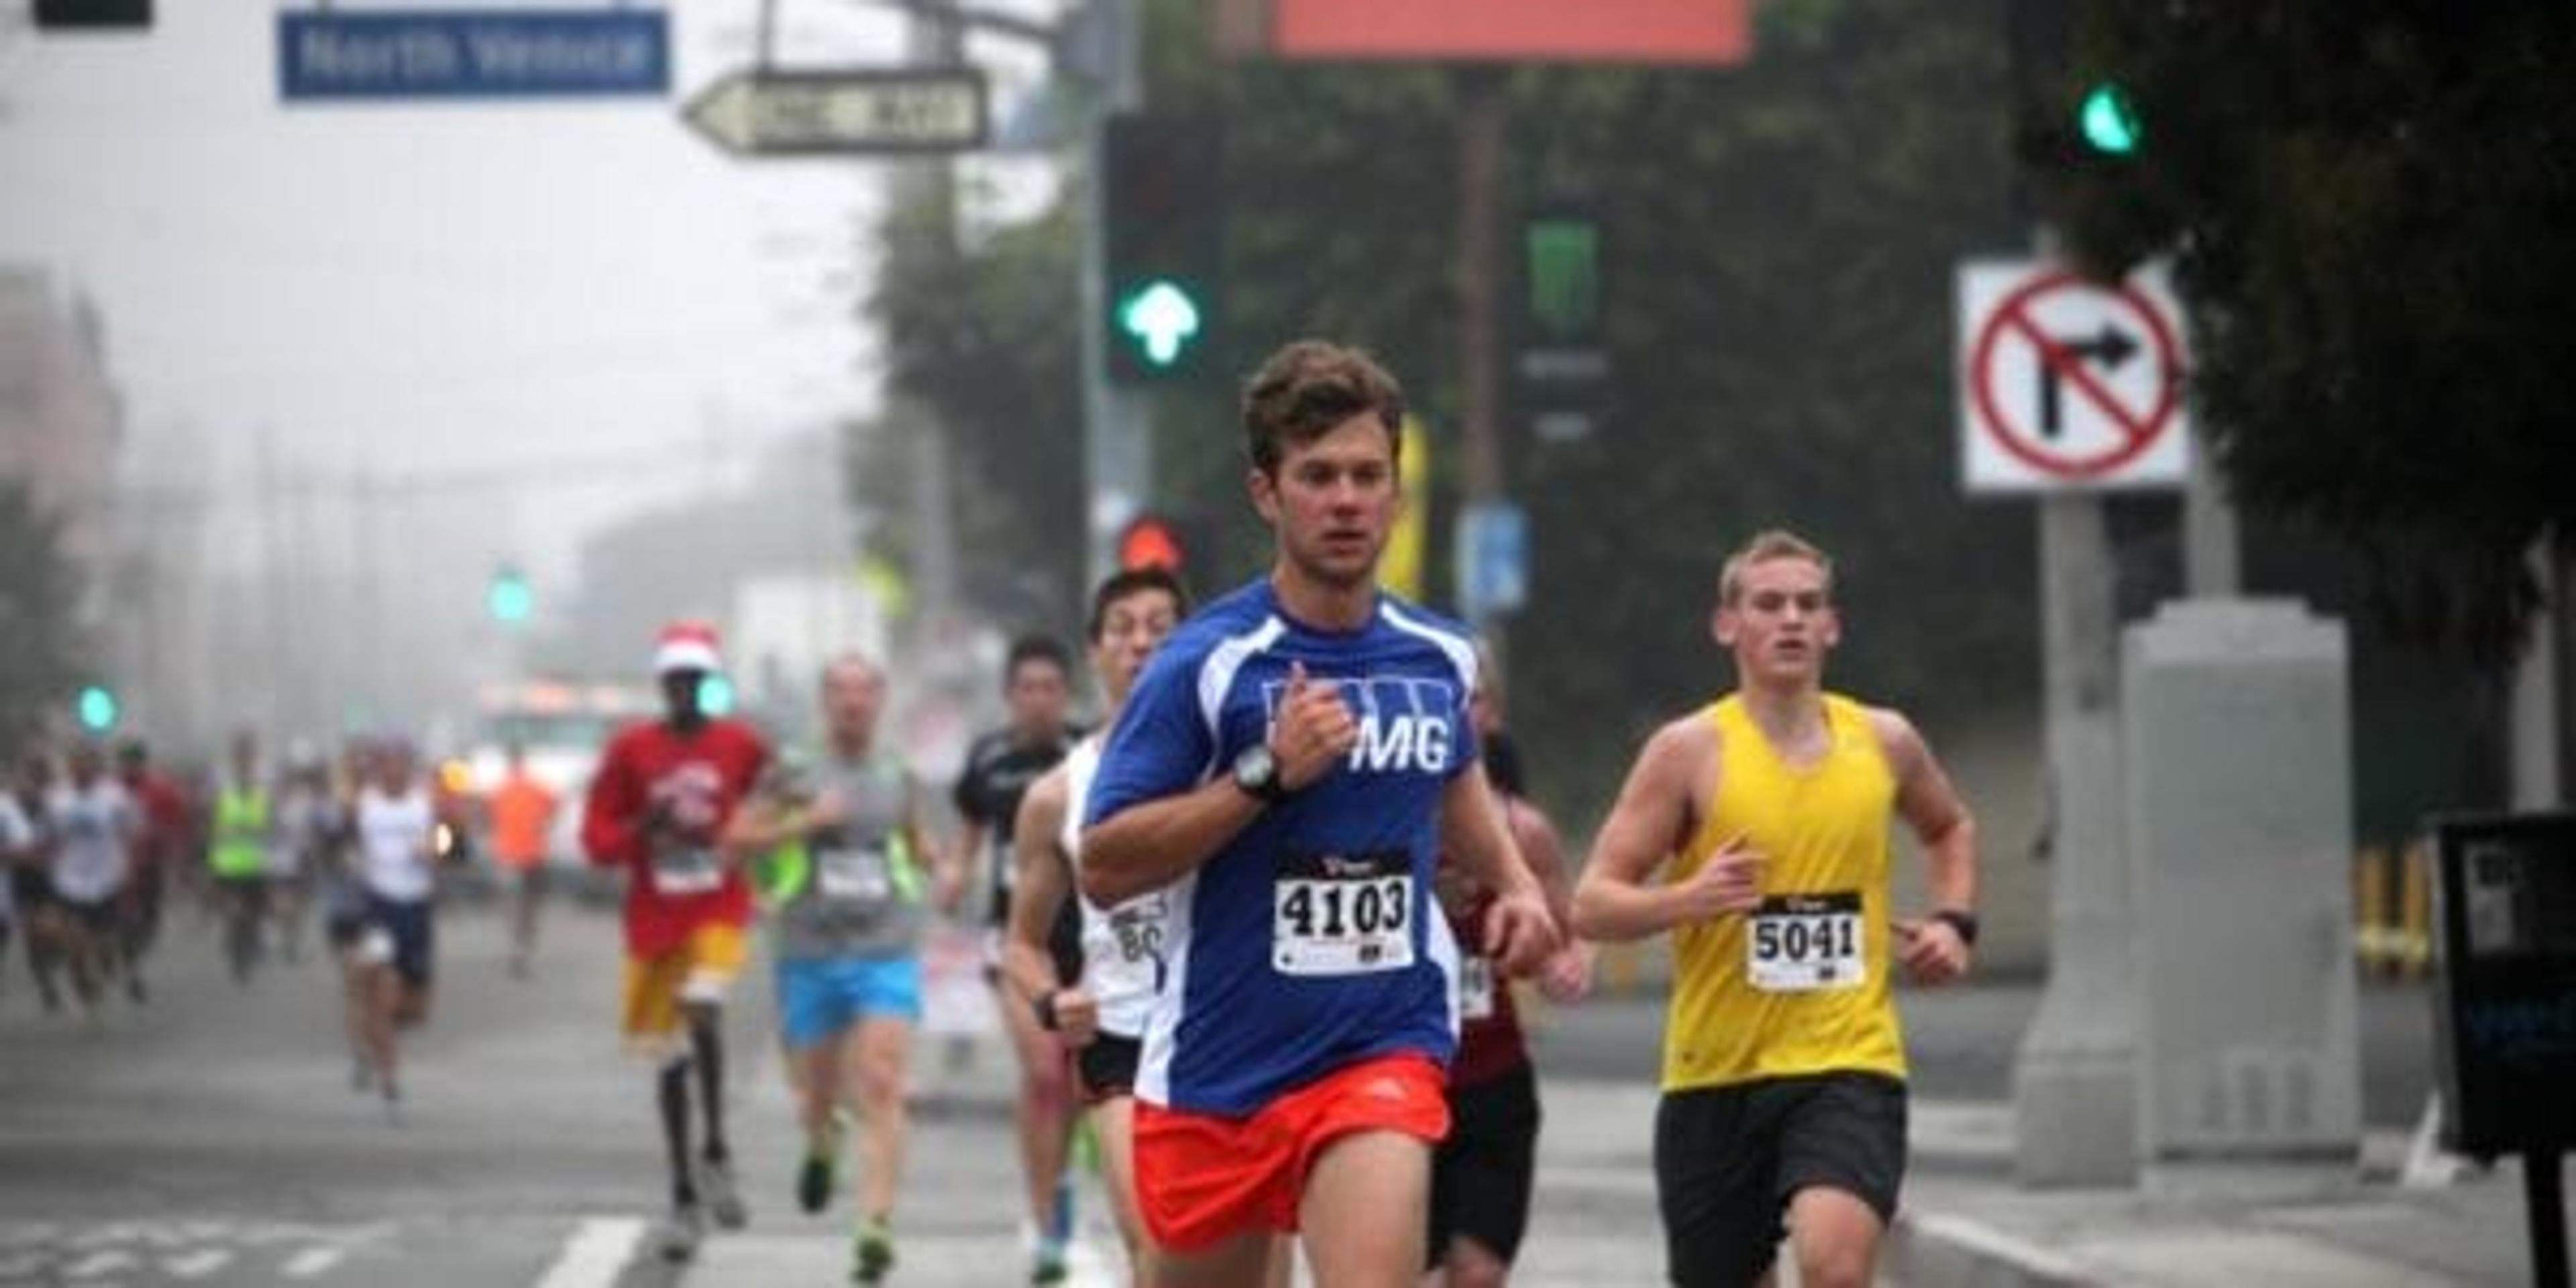 people running in a marathon